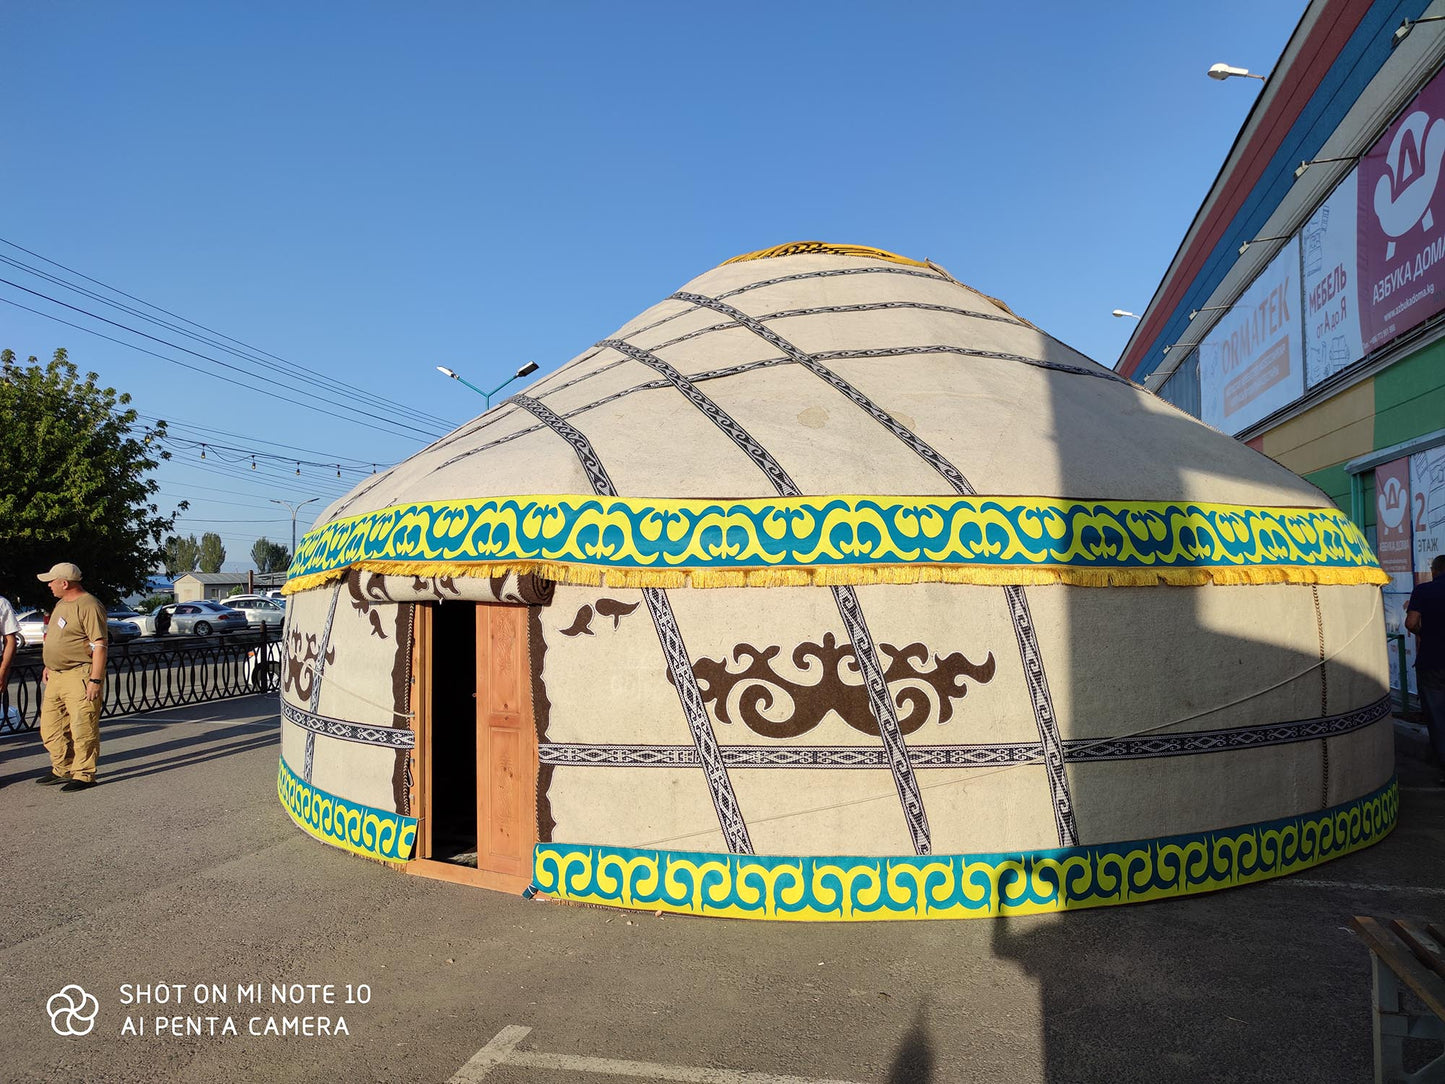 Handcraft Felt Yurt from Kazakhstan / Kyrgyzstan